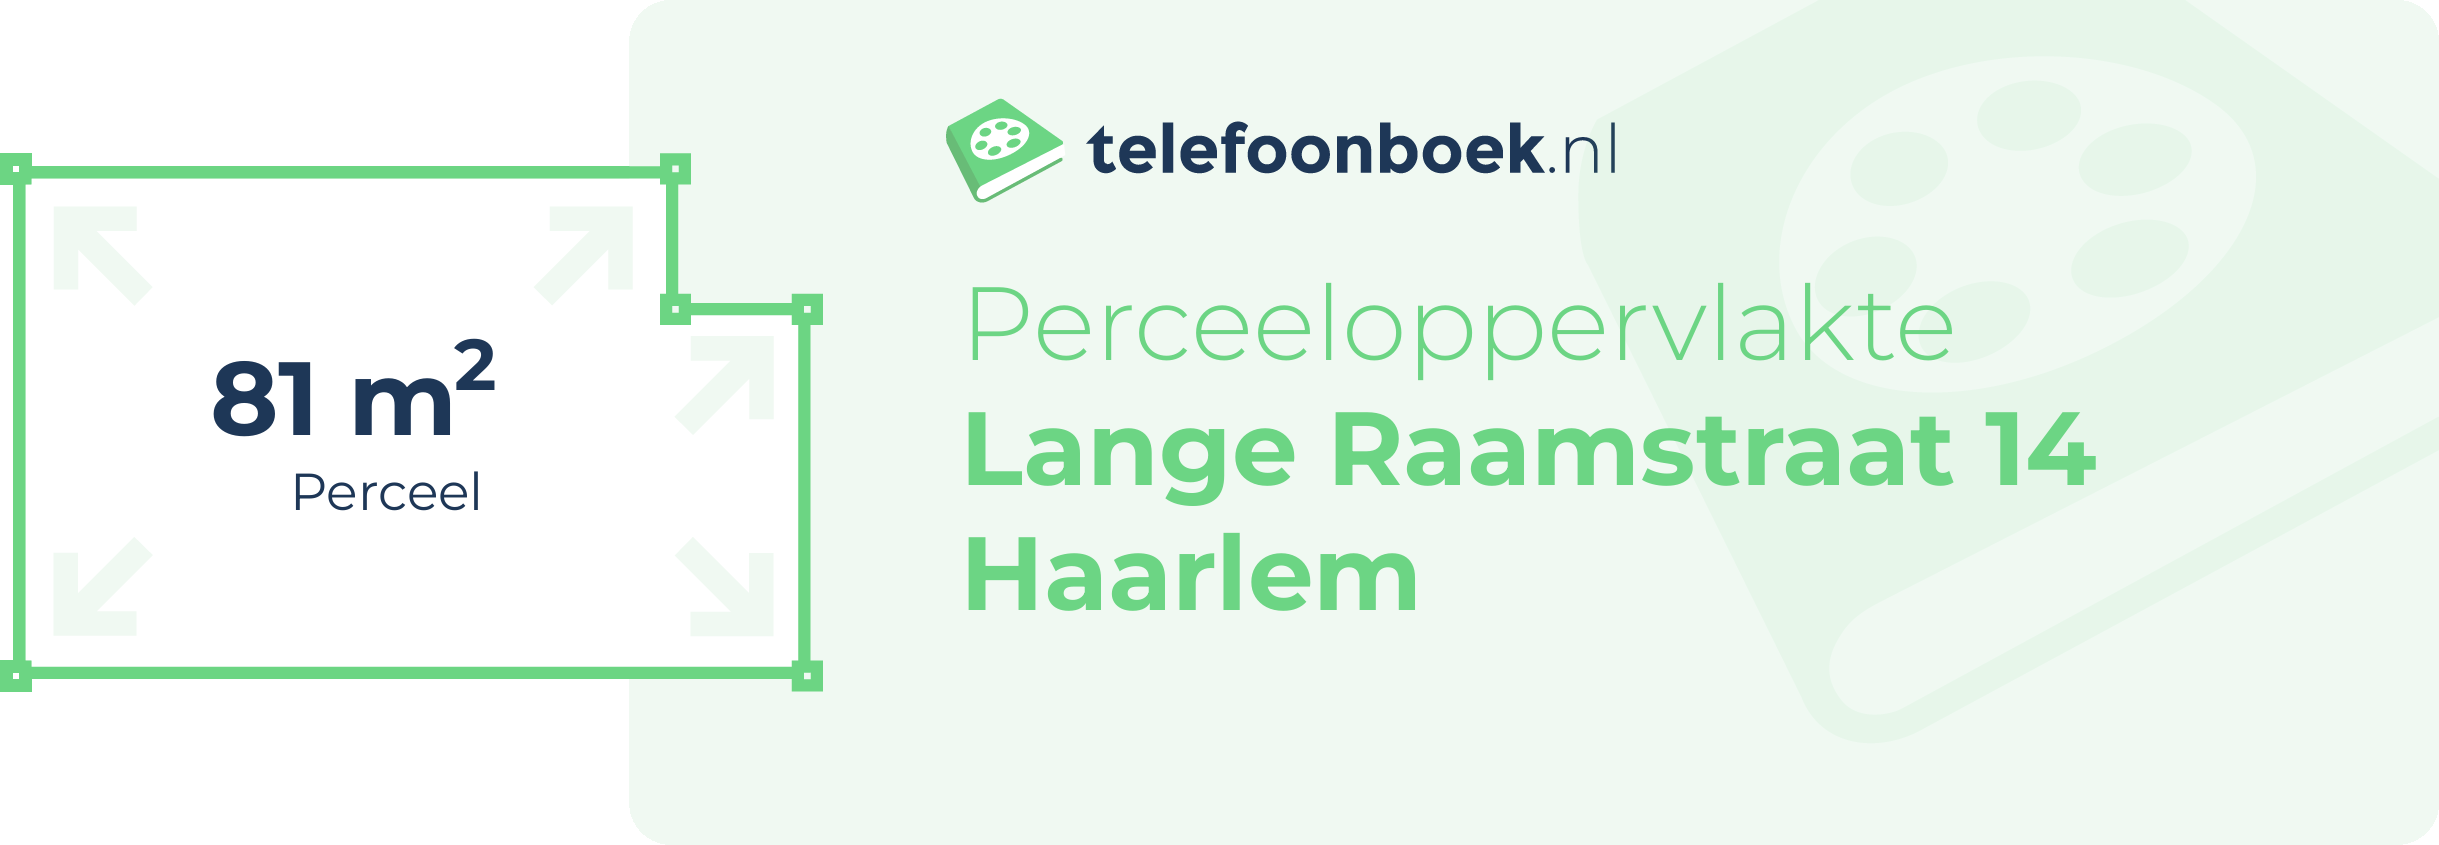 Perceeloppervlakte Lange Raamstraat 14 Haarlem